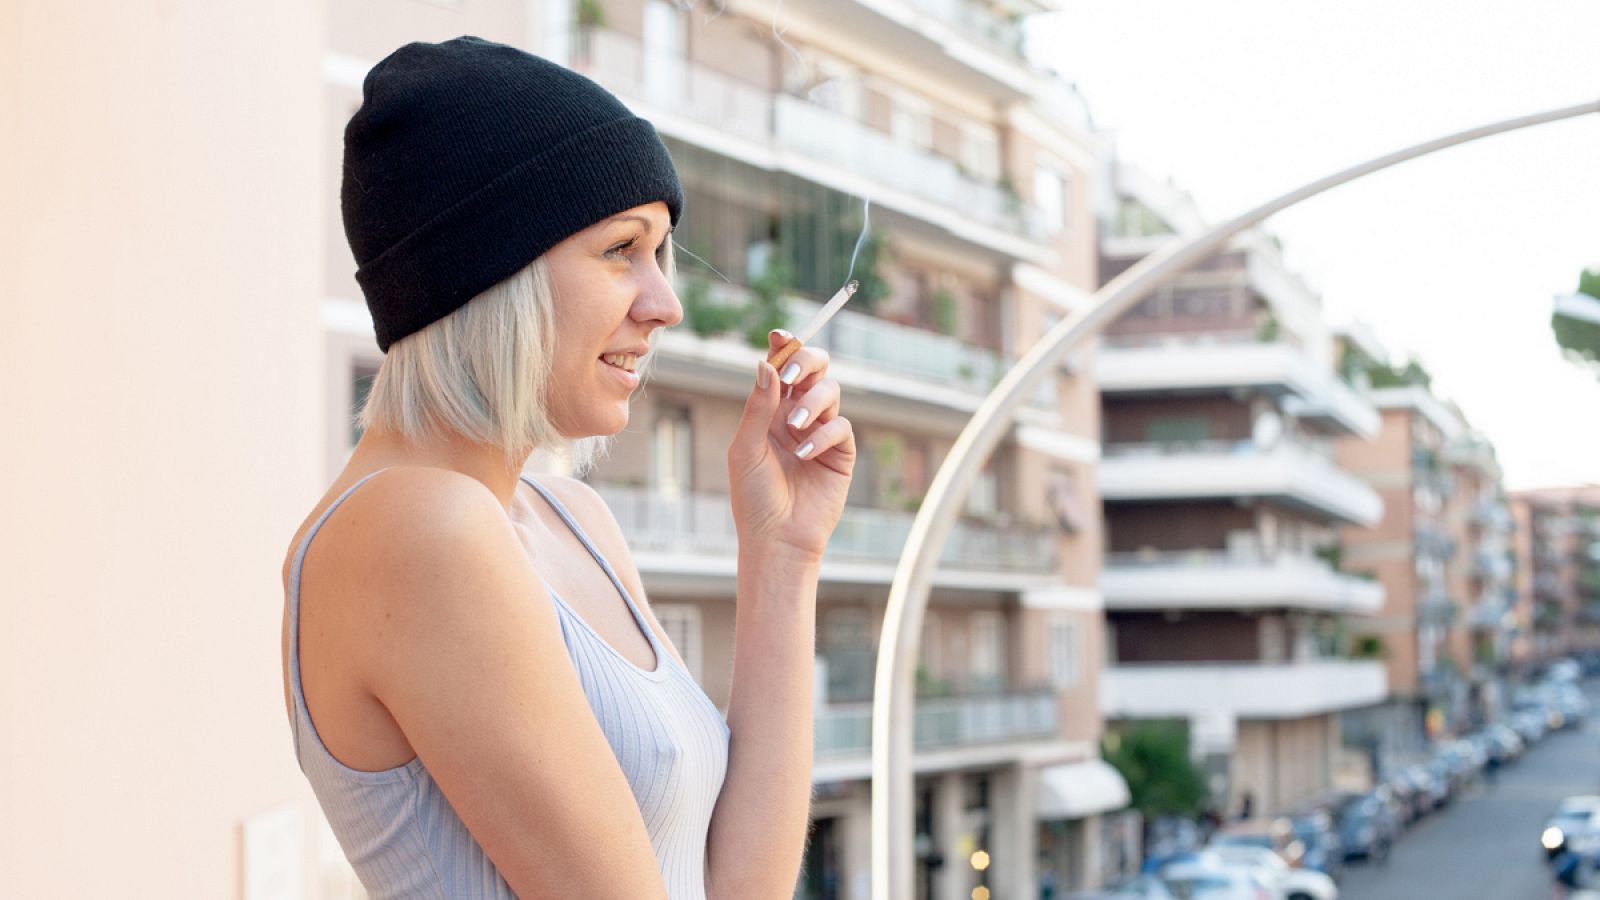 Fumar y estar expuesto a altos niveles de contaminación aumenta el riesgo cardiovascular y de cáncer.